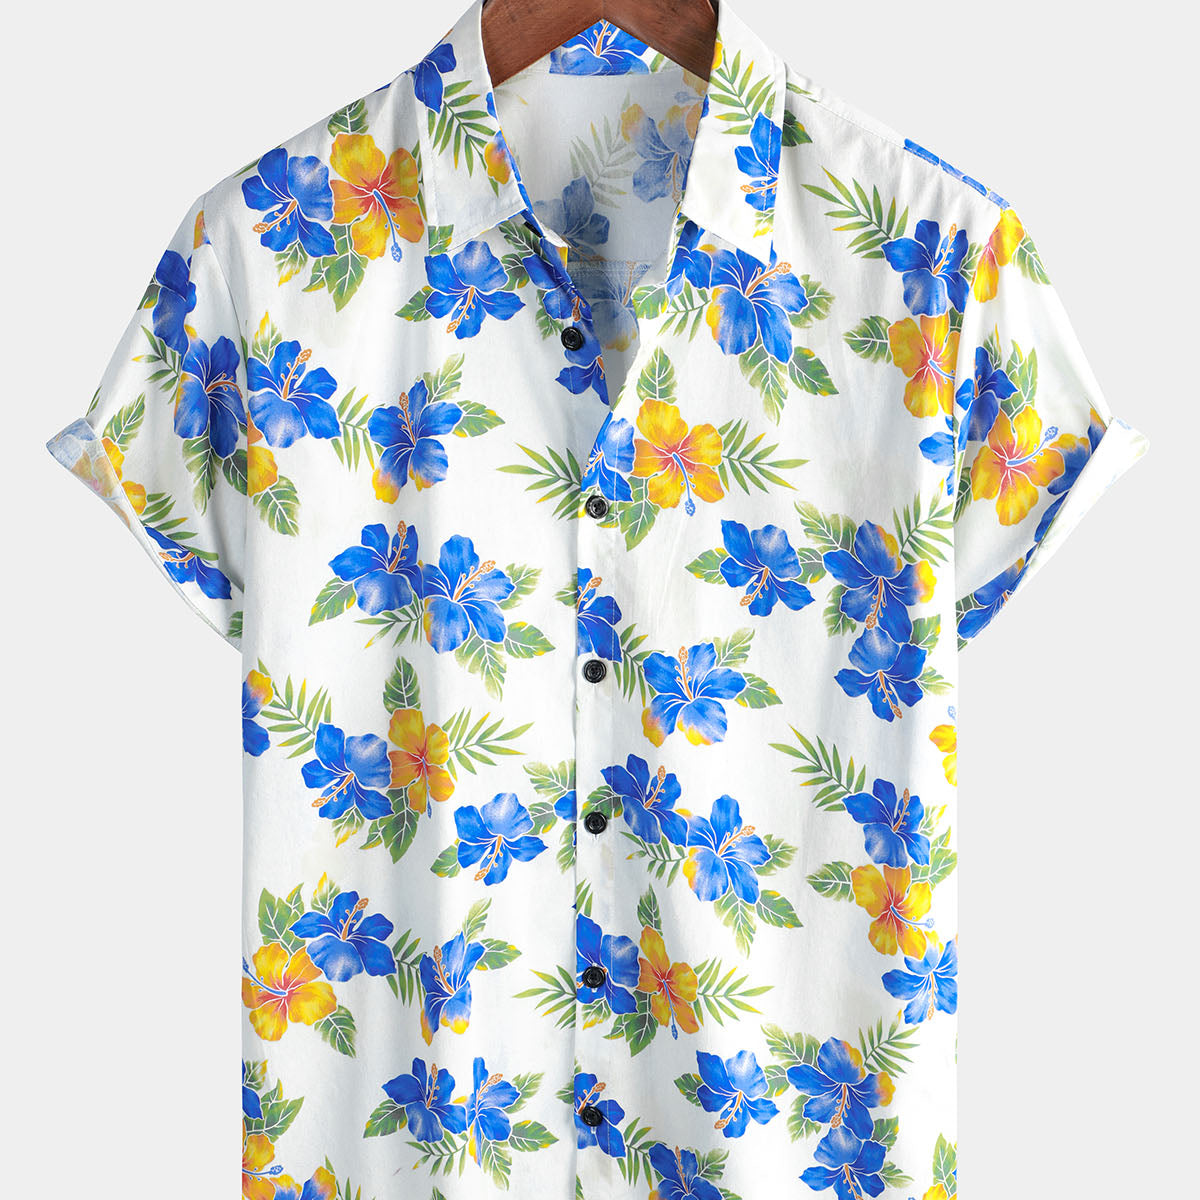 Men's Cotton Floral Hawaiian Button Up Tropical Casual Summer Hibiscus Flower Short Sleeve Shirt